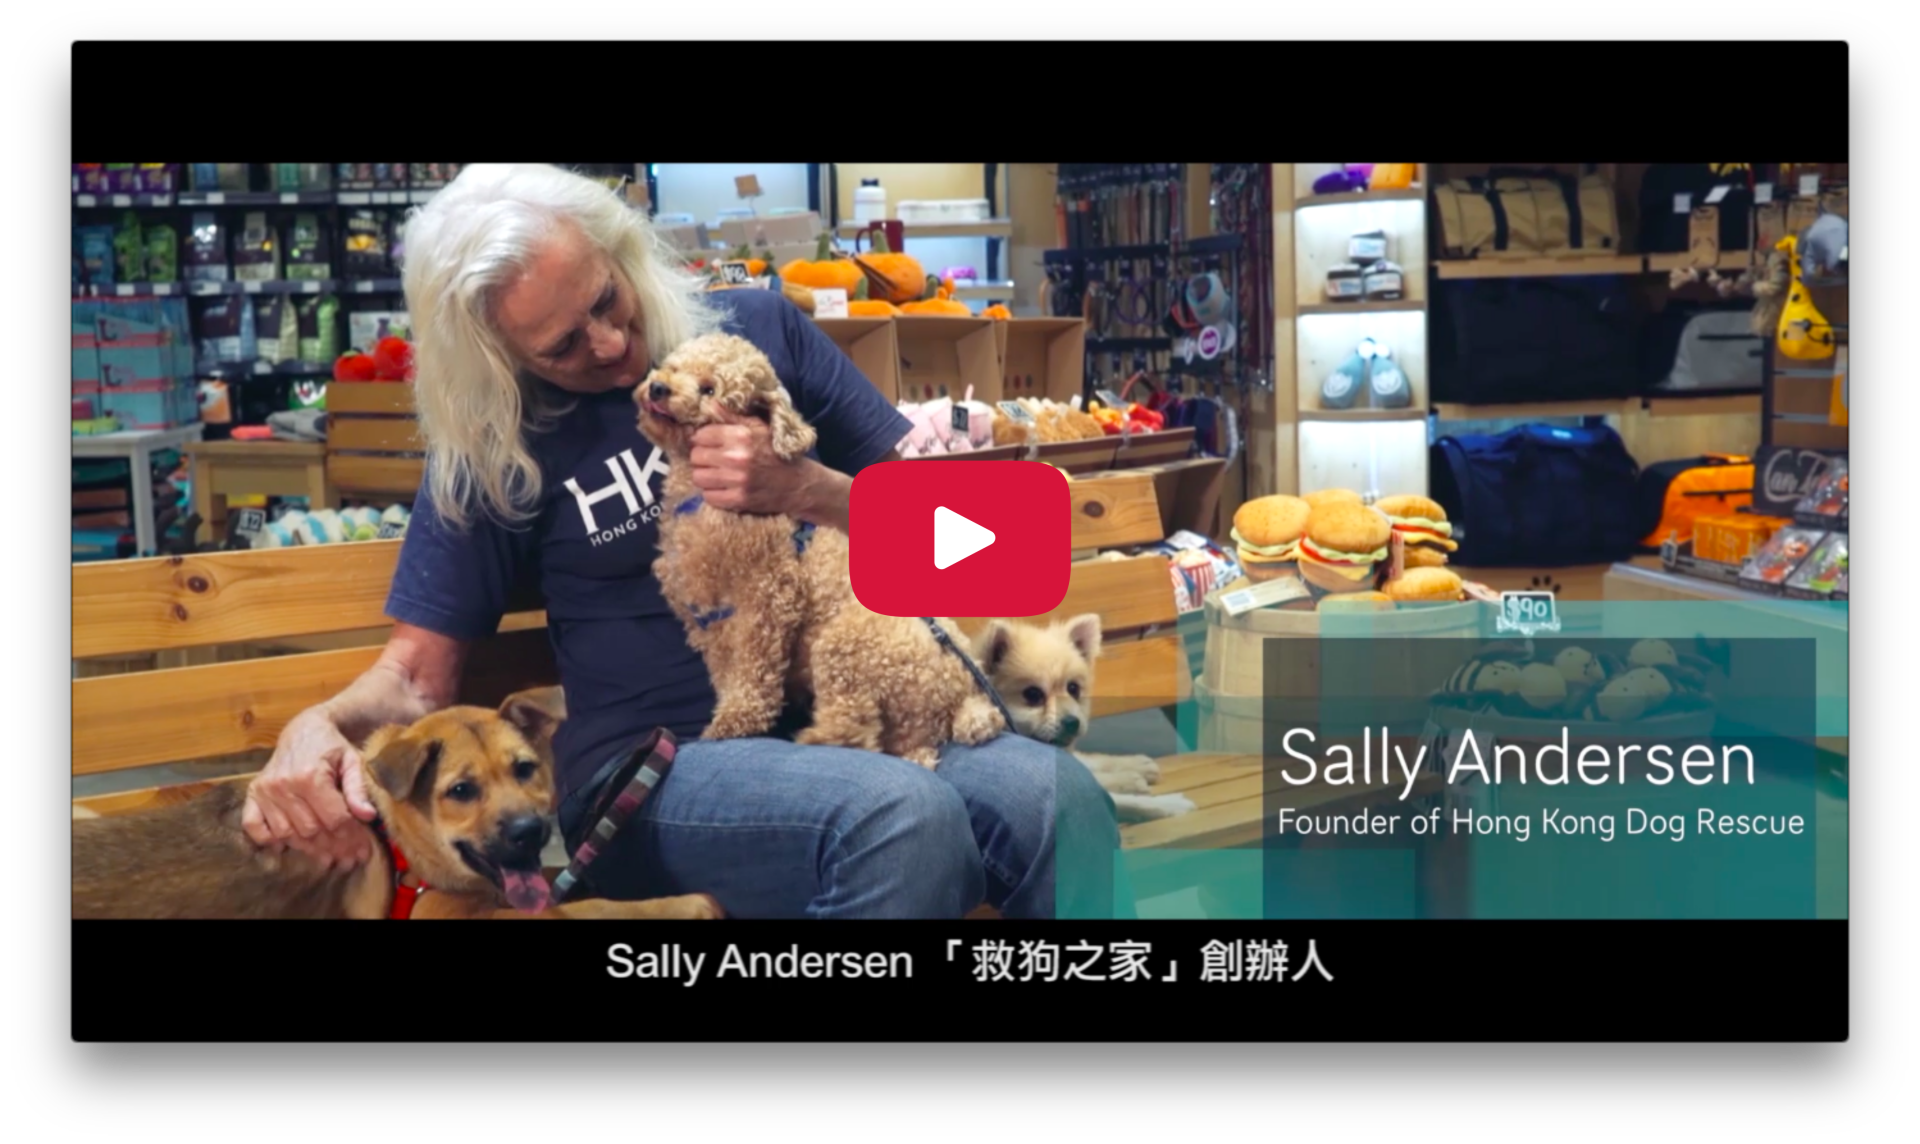 2017 Character Day Hong Kong Ambassador - Sally Anderson